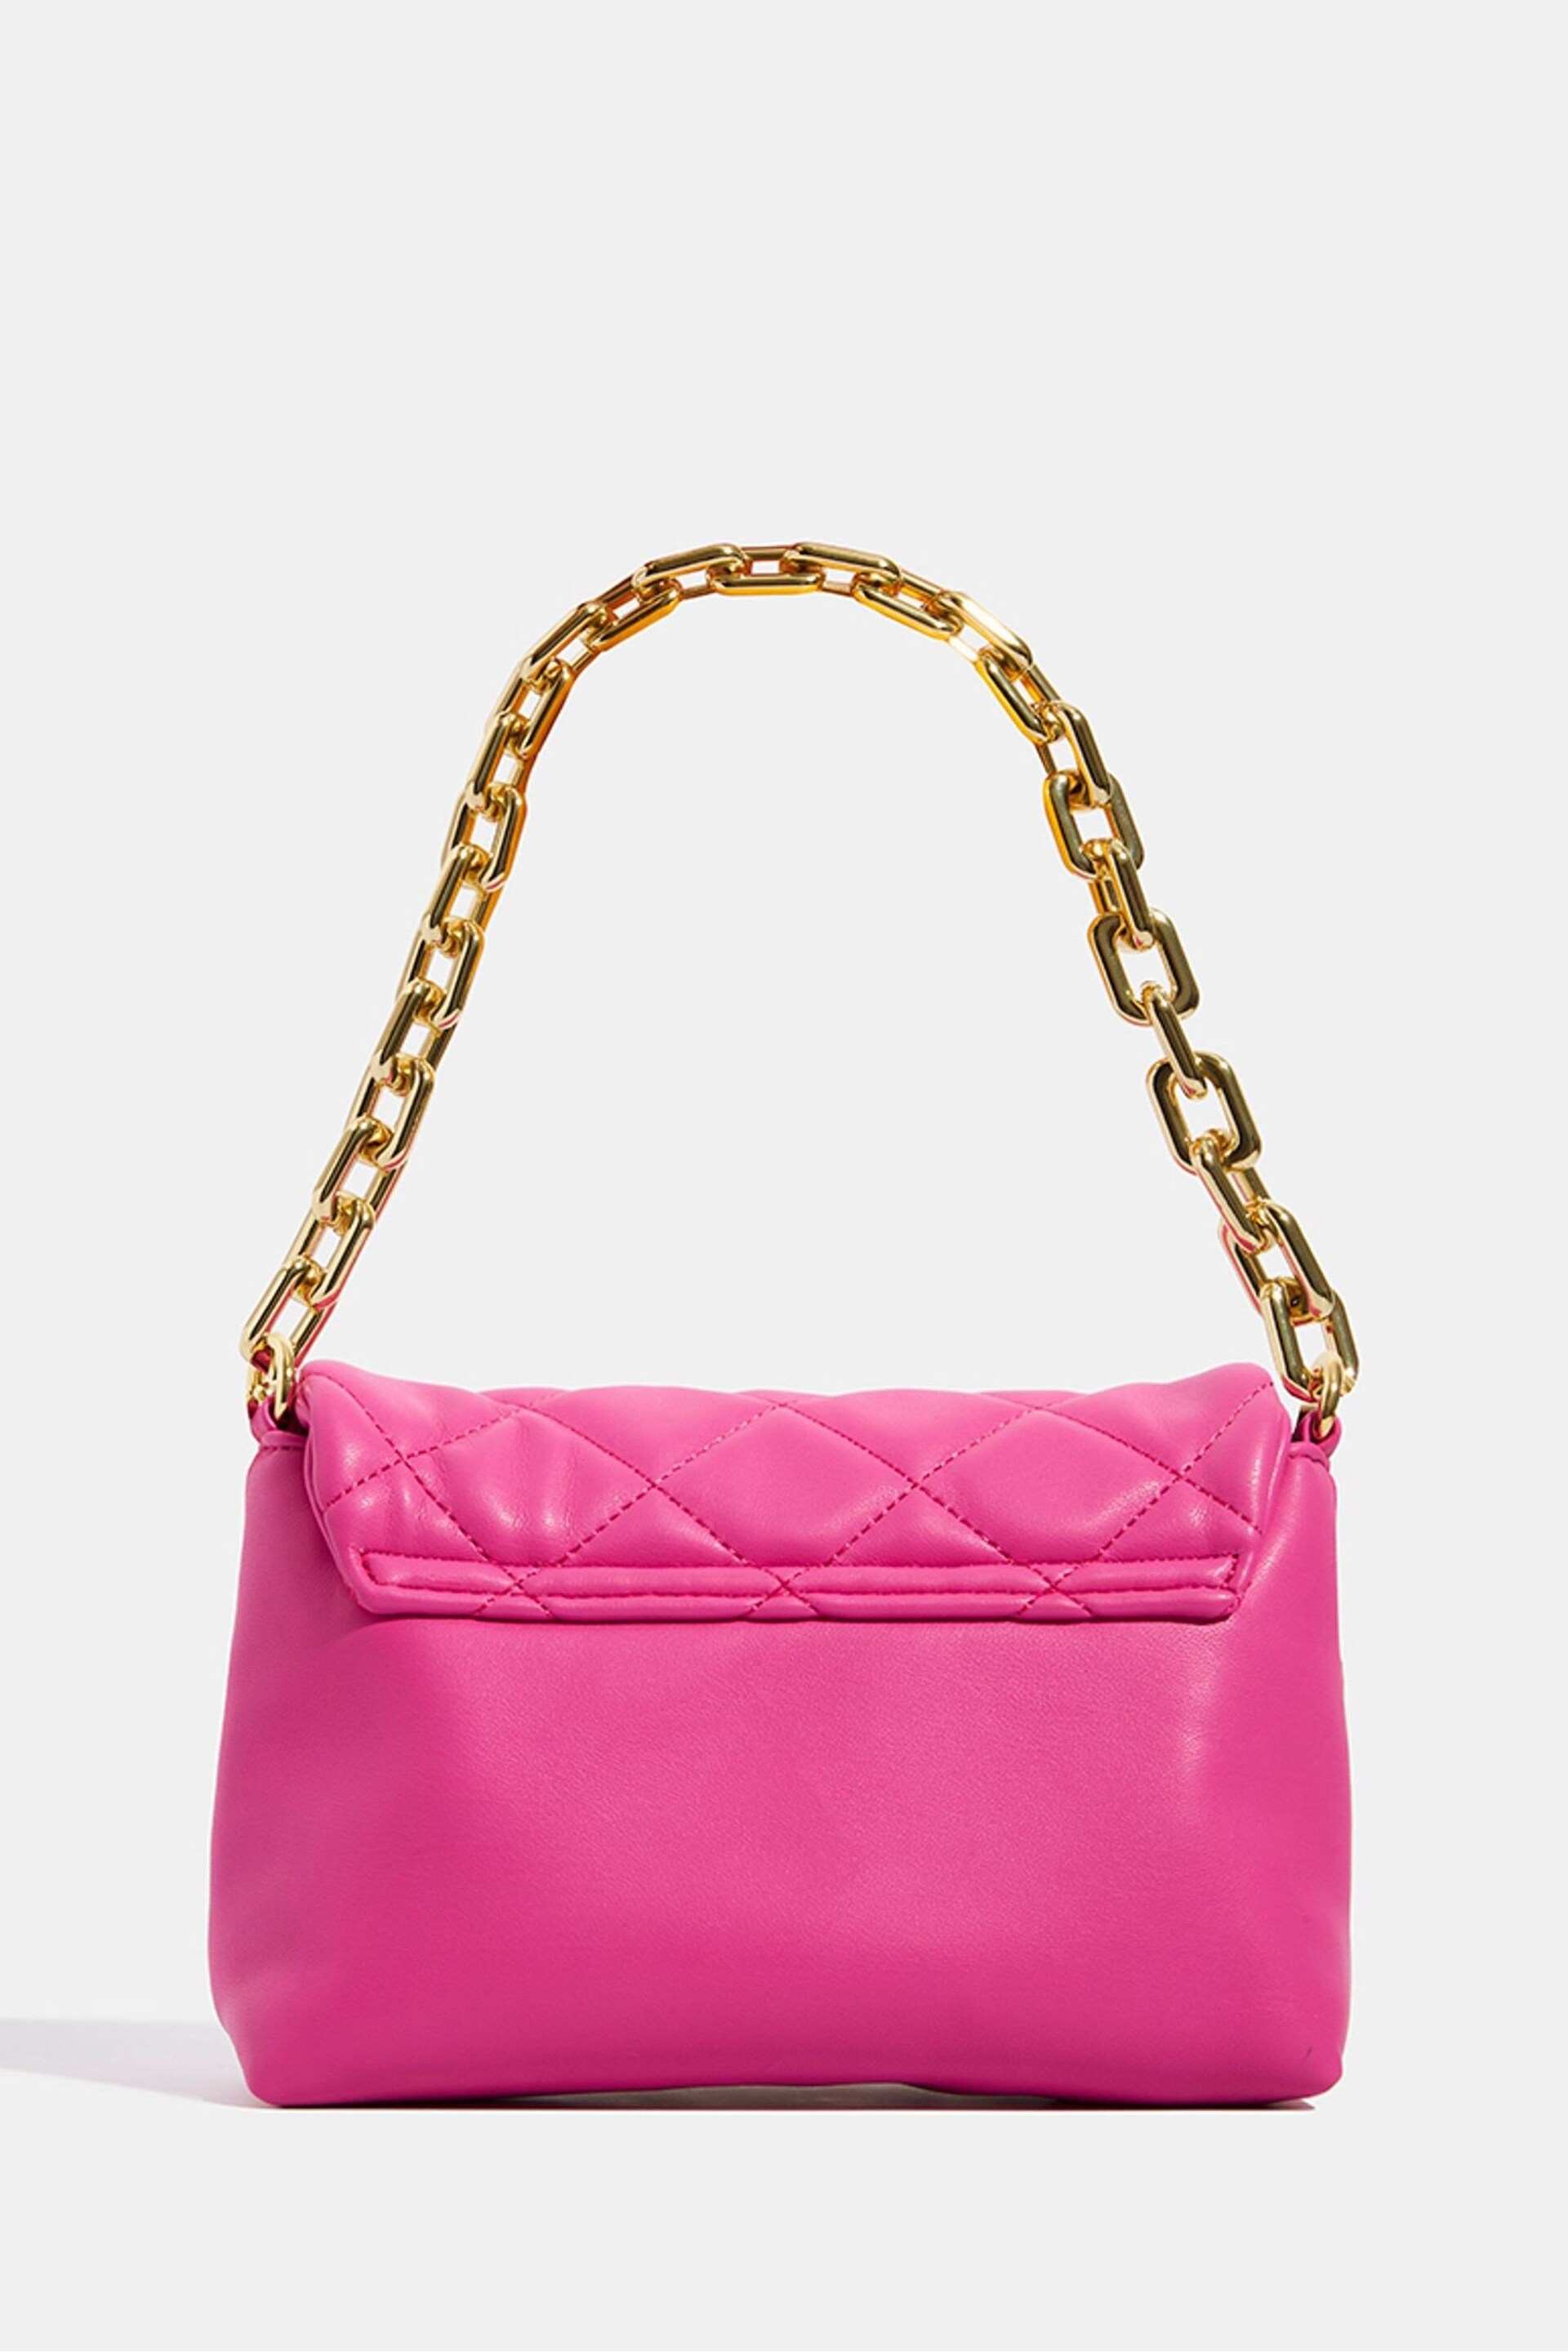 Skinnydip Farah Pink Studded Quilt Chain Shoulder Bag - Image 2 of 5